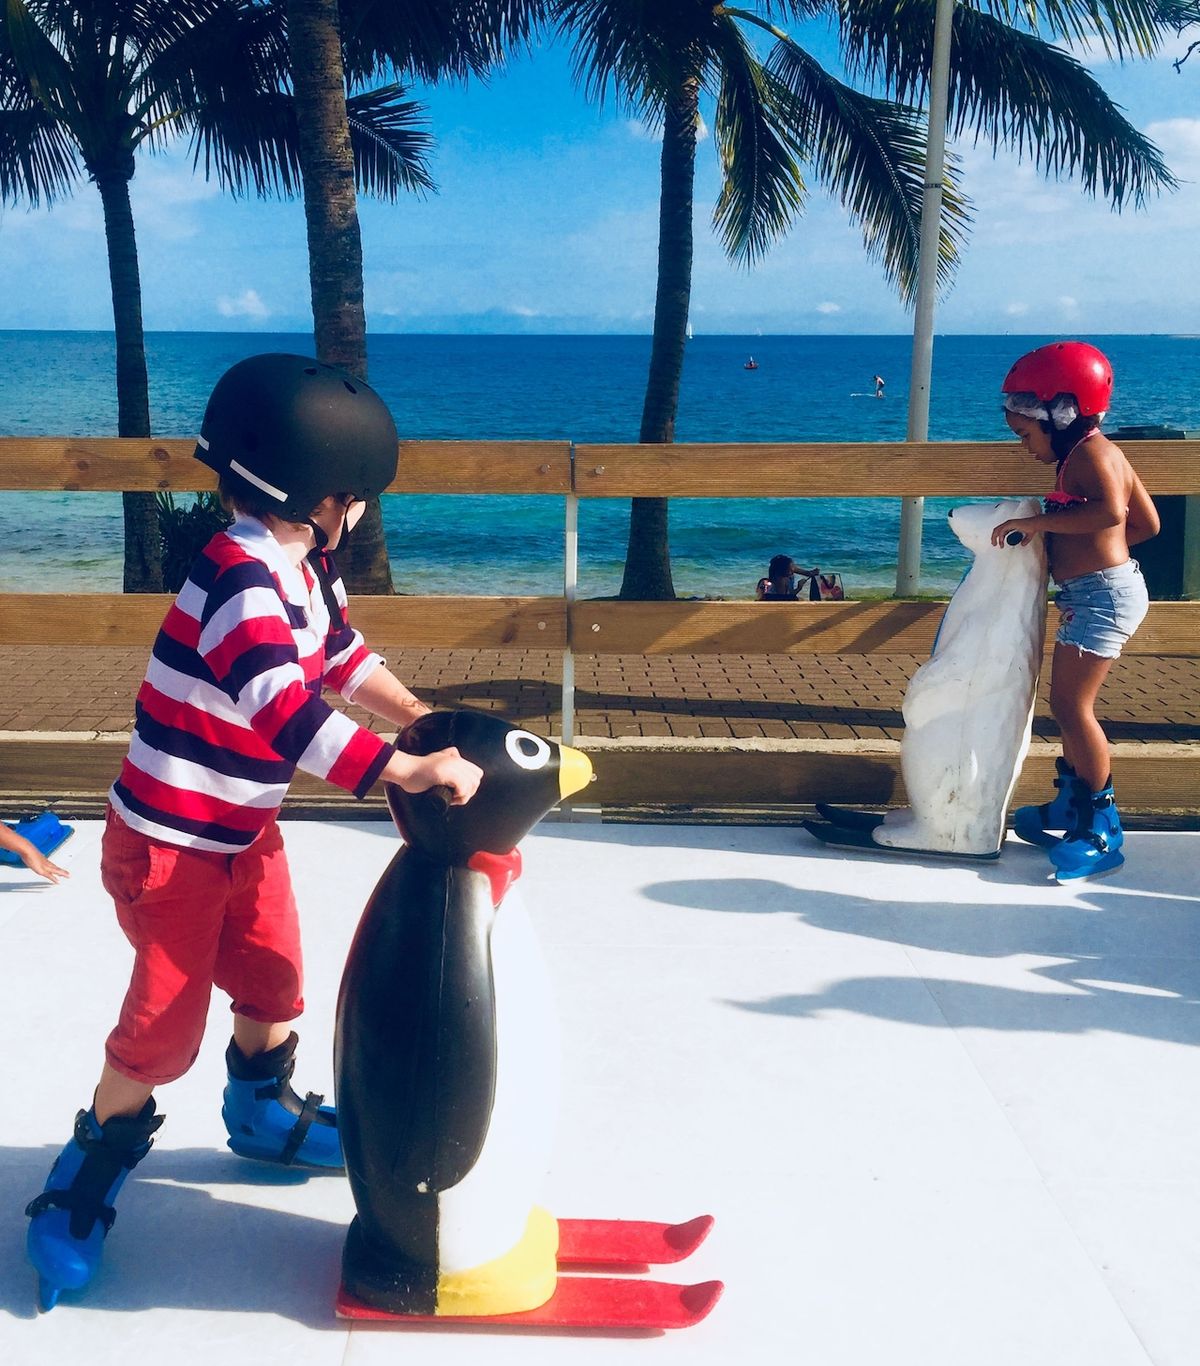 Nová Kaledonie je rájem turistů – nekonečné pláže a trvale teplé počasí jsou ideální i pro děti (vlevo syn Louis).